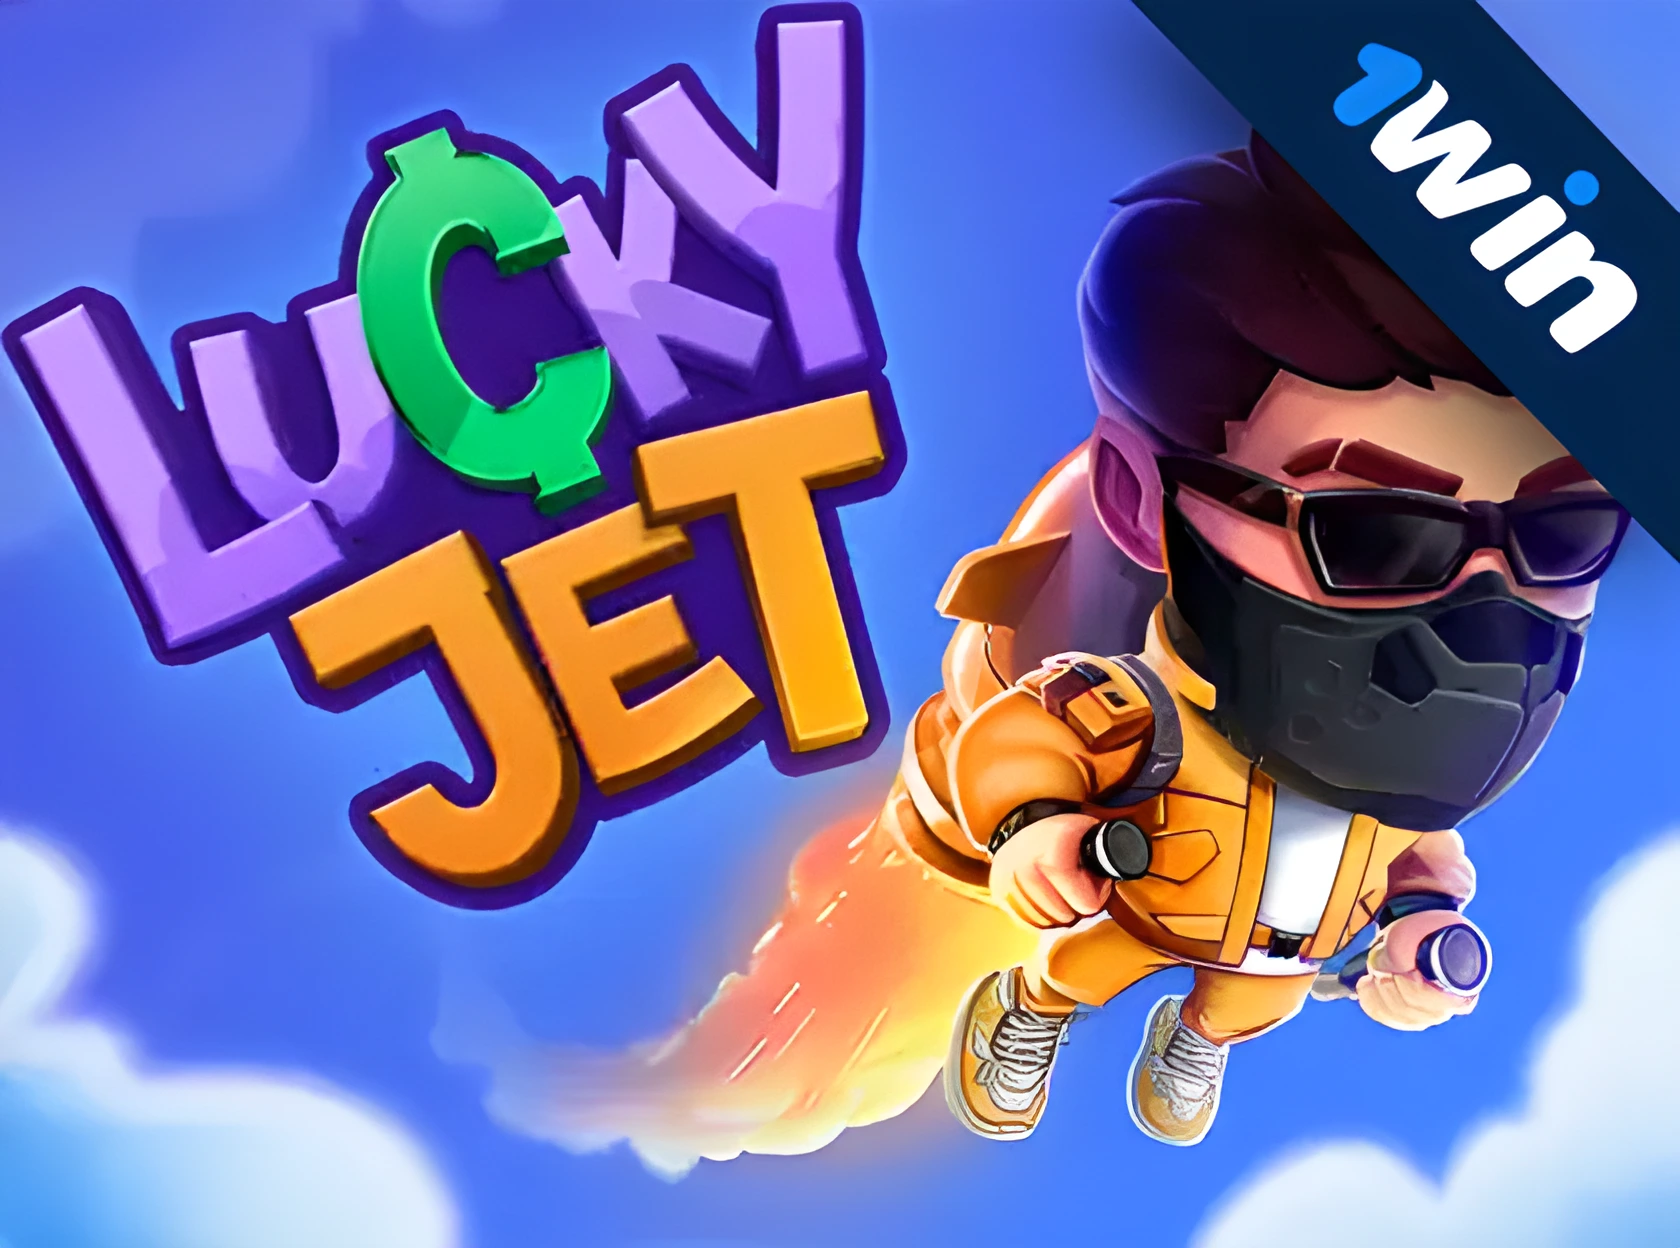 Lucky Jet - рдкреИрд╕реЗ рдХреЗ рд▓рд┐рдП рдПрдХ рдЕрдиреЛрдЦрд╛ рдХреНрд░реИрд╢ рд╕реНрд▓реЙрдЯ рдСрдирд▓рд╛рдЗрди рдЦреЗрд▓рдирд╛